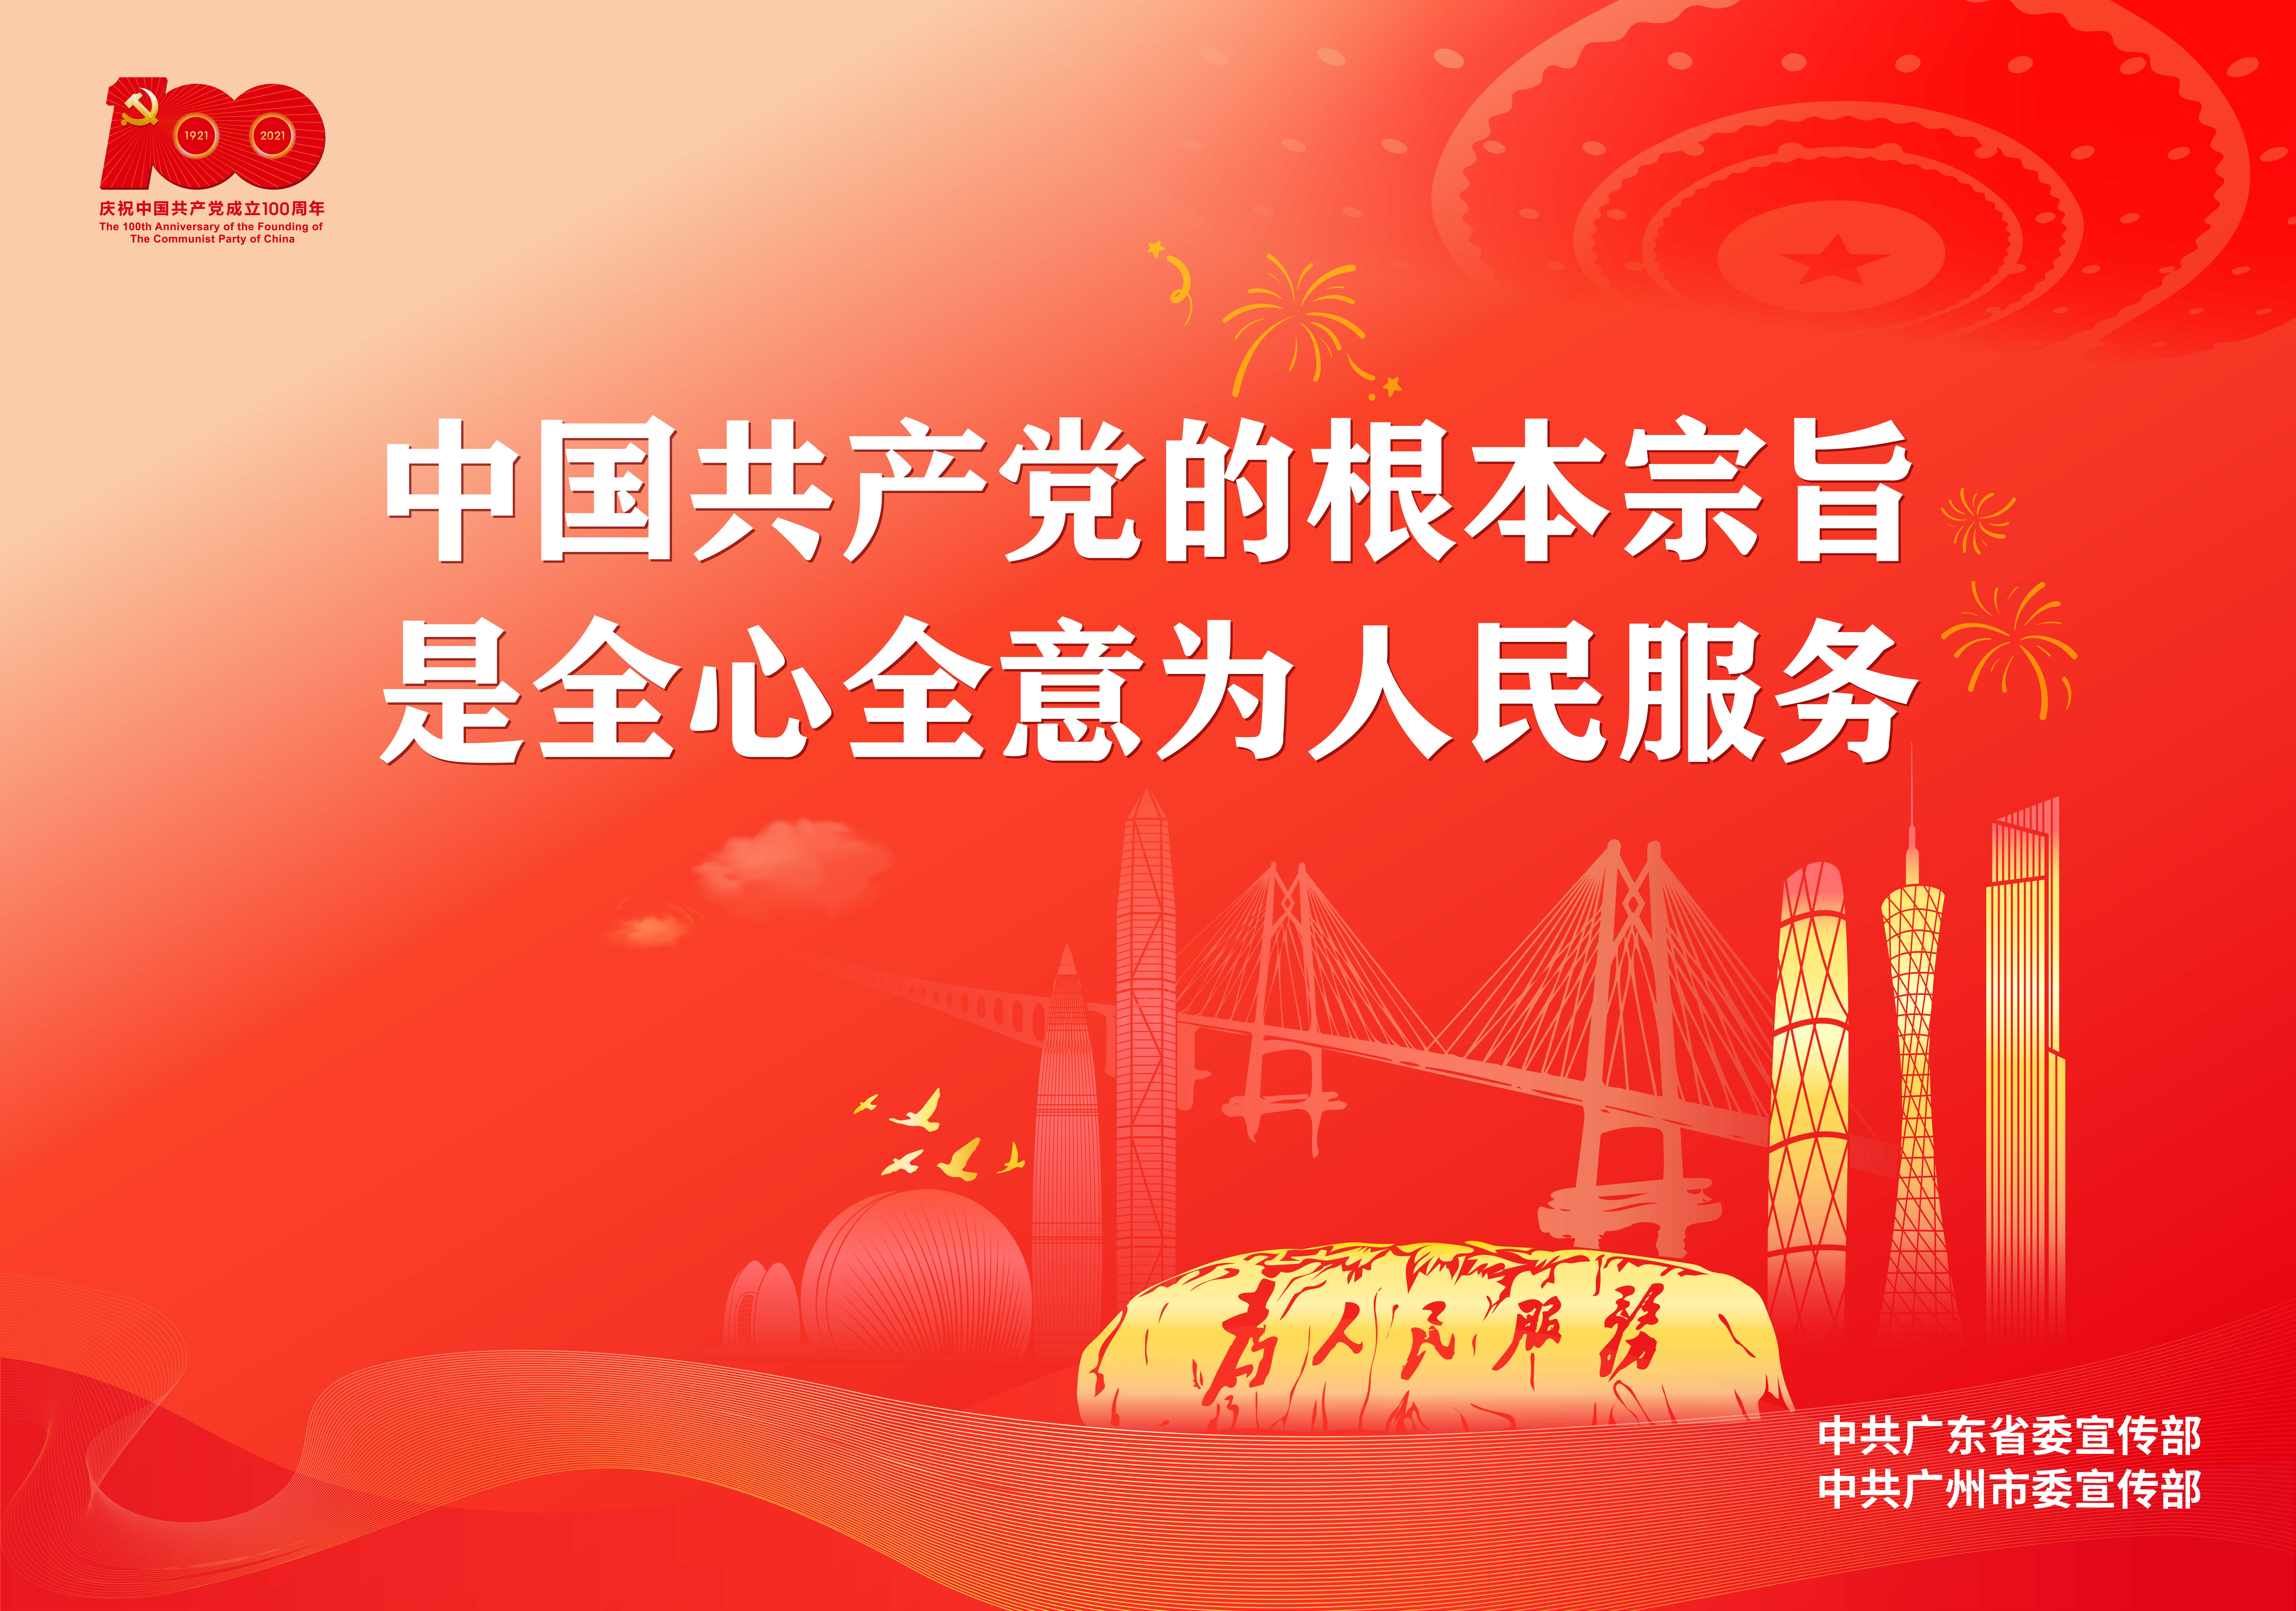 建党100周年海报-3中国共产党的根本宗旨是全心全意为人民服务.jpg